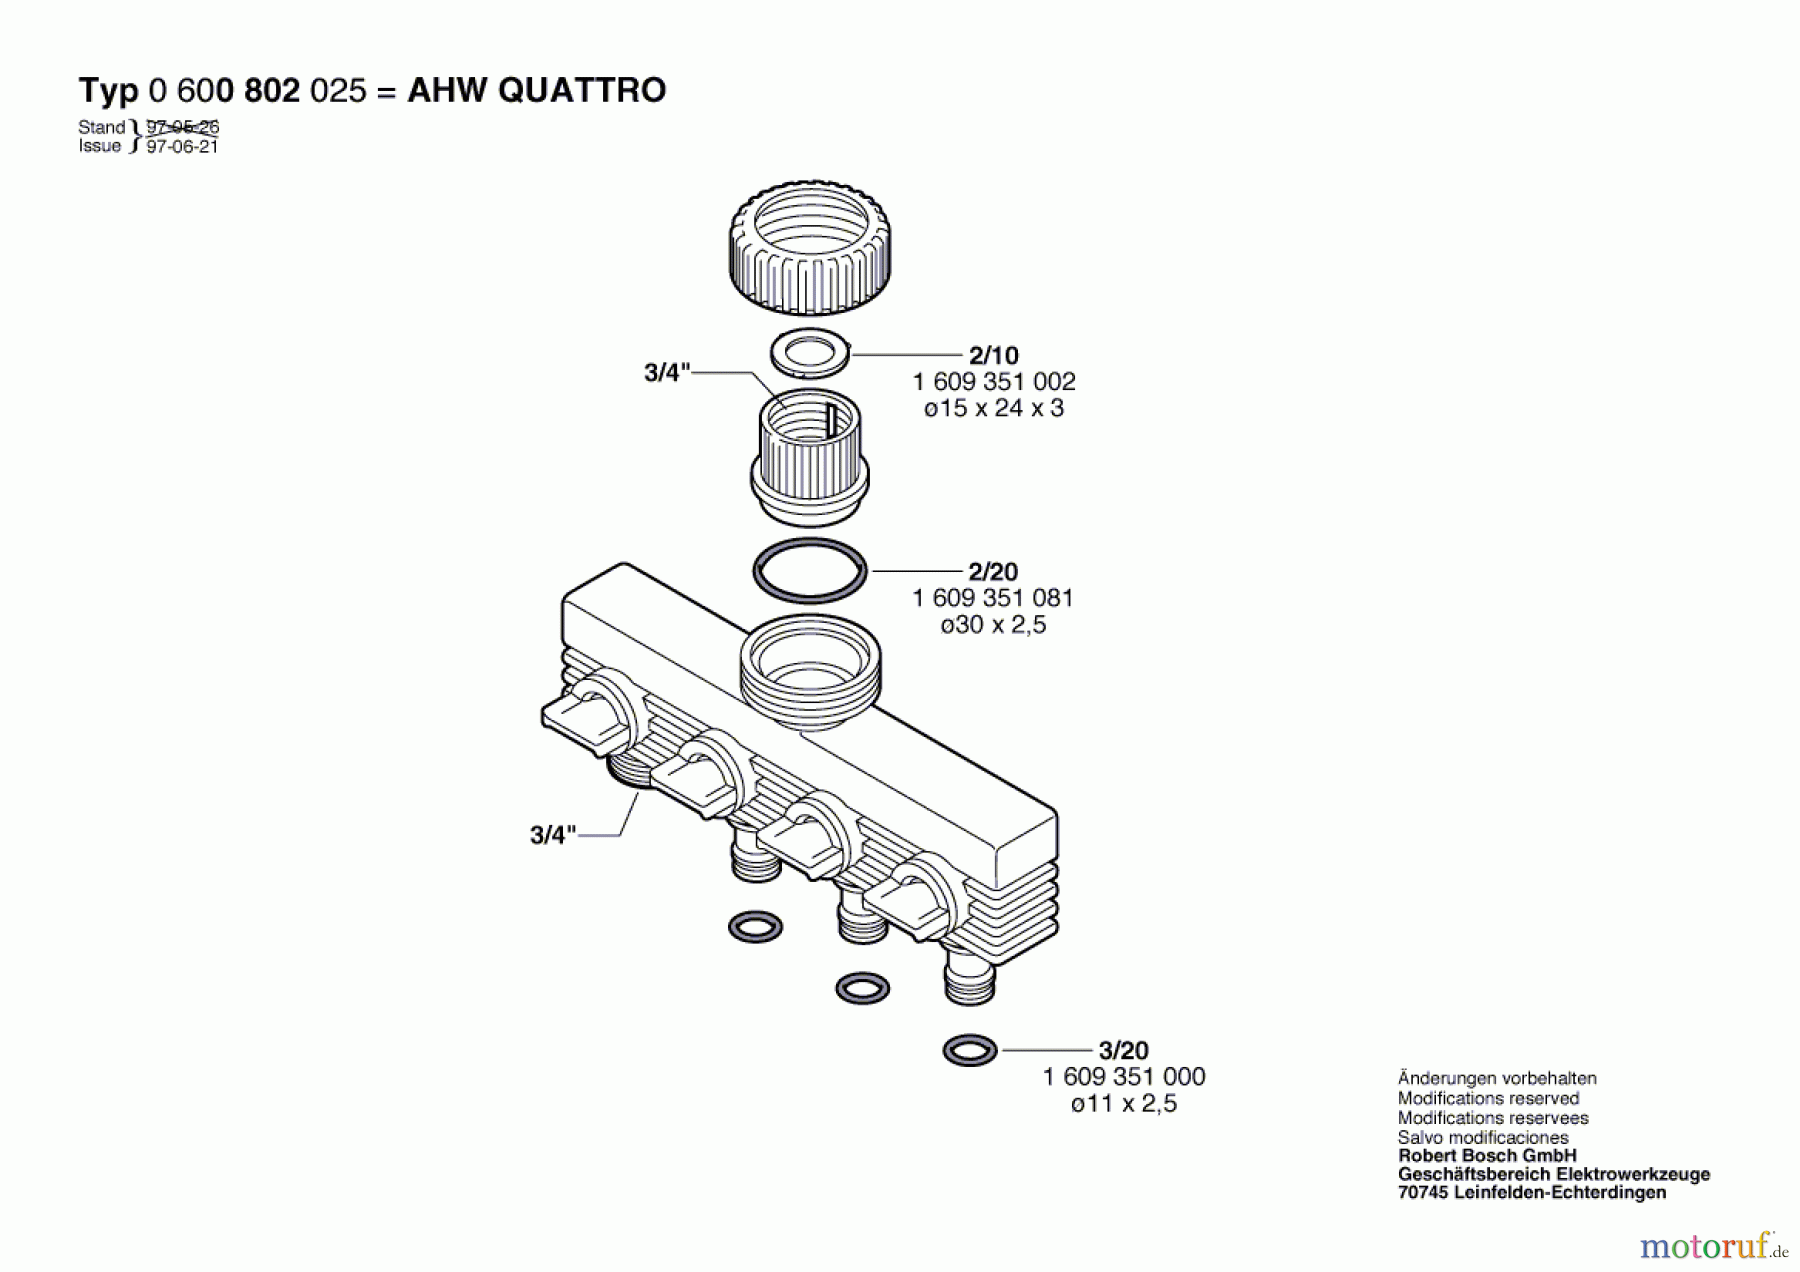  Bosch Wassertechnik Hahnanschlussstück AHW QUATTRO Seite 1